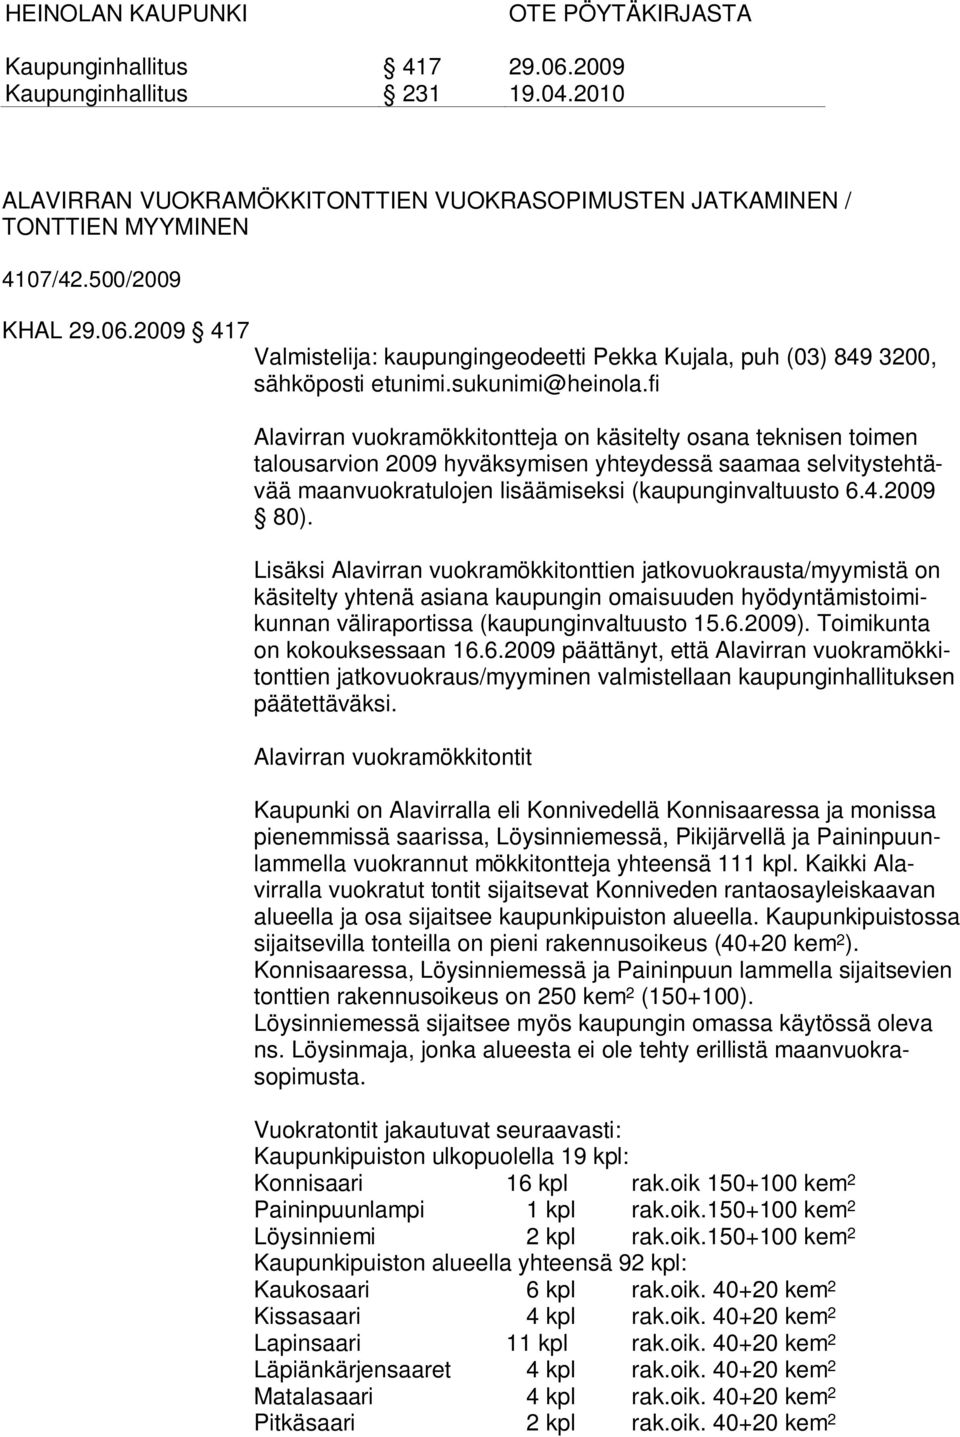 fi Alavirran vuokramökkitontteja on käsitelty osana teknisen toimen talousarvion 2009 hyväksymisen yhteydessä saamaa selvitystehtävää maanvuokratulojen lisäämiseksi (kaupunginvaltuusto 6.4.2009 80).